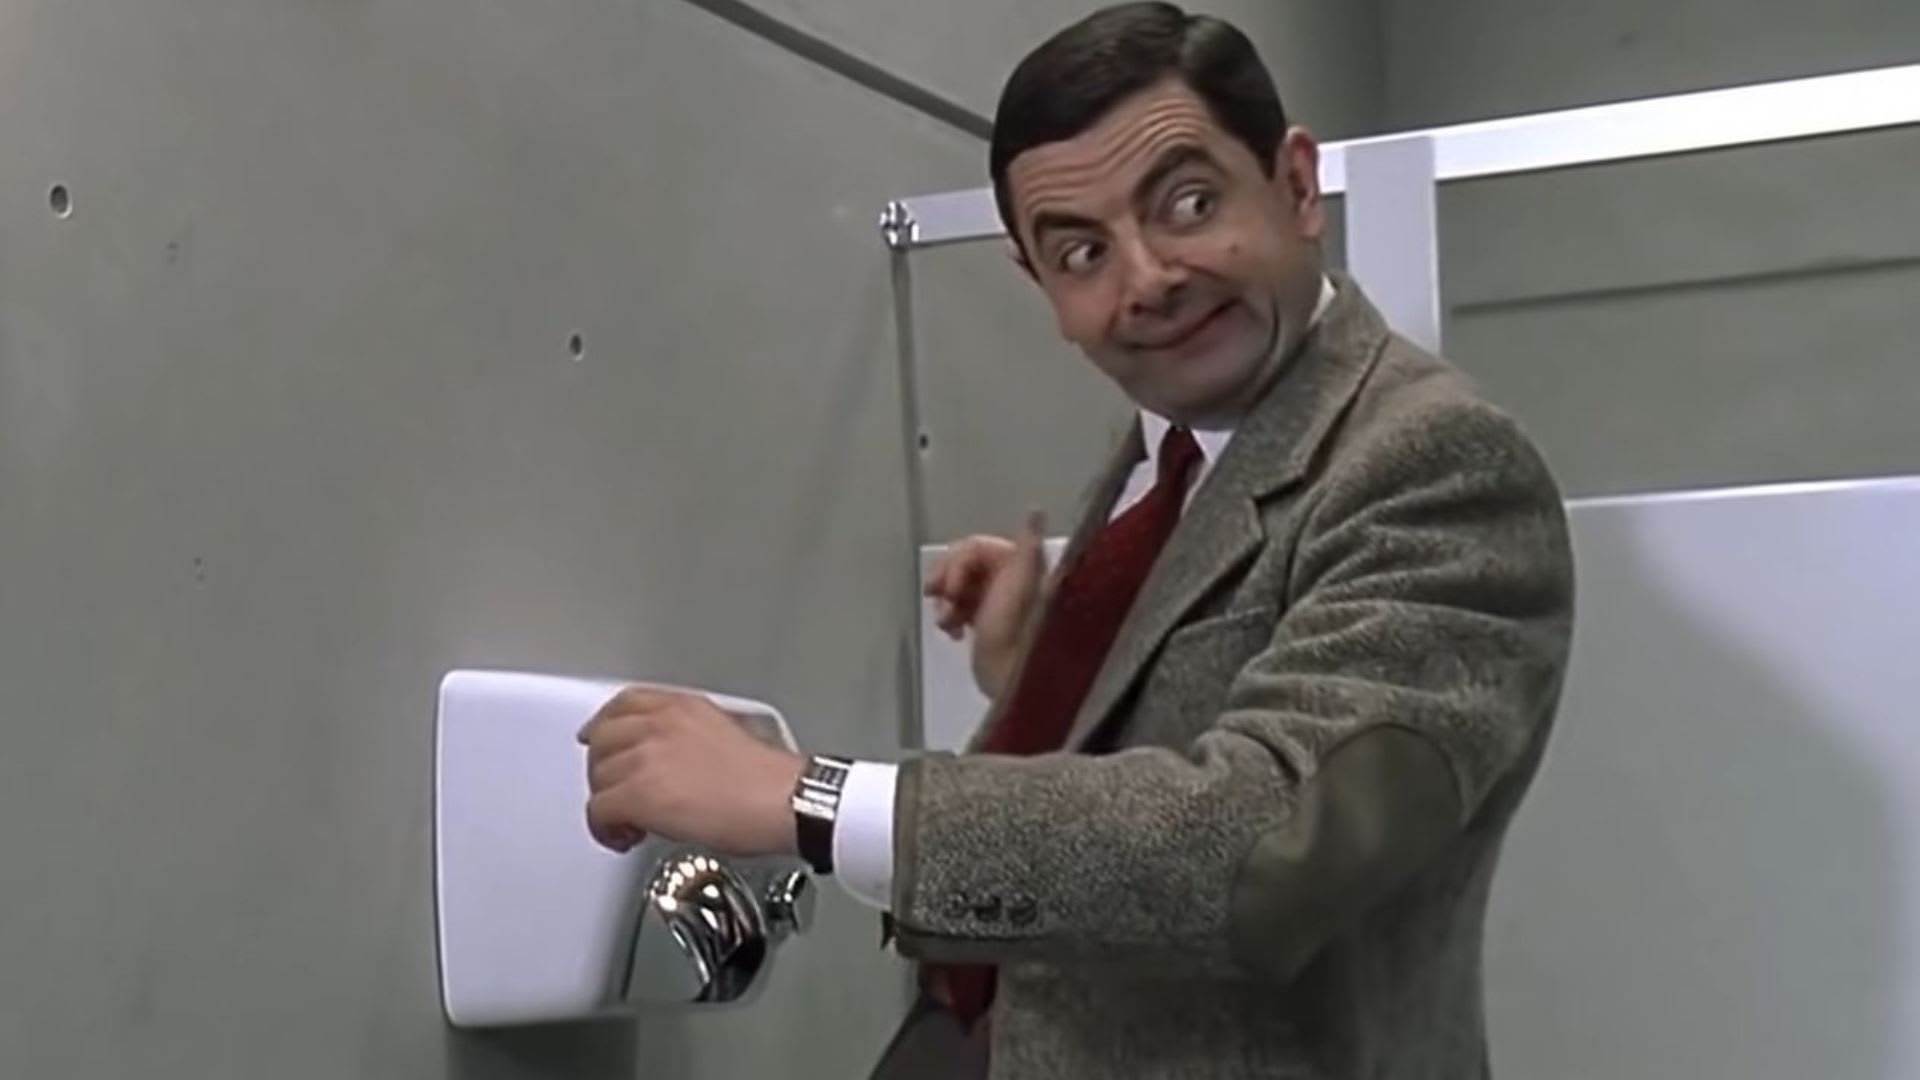 Horkovzdušné osušovače proslavil hlavně celovečerní film s Mr. Beanem. Po tomhle článku se jim ale smát nebudete...